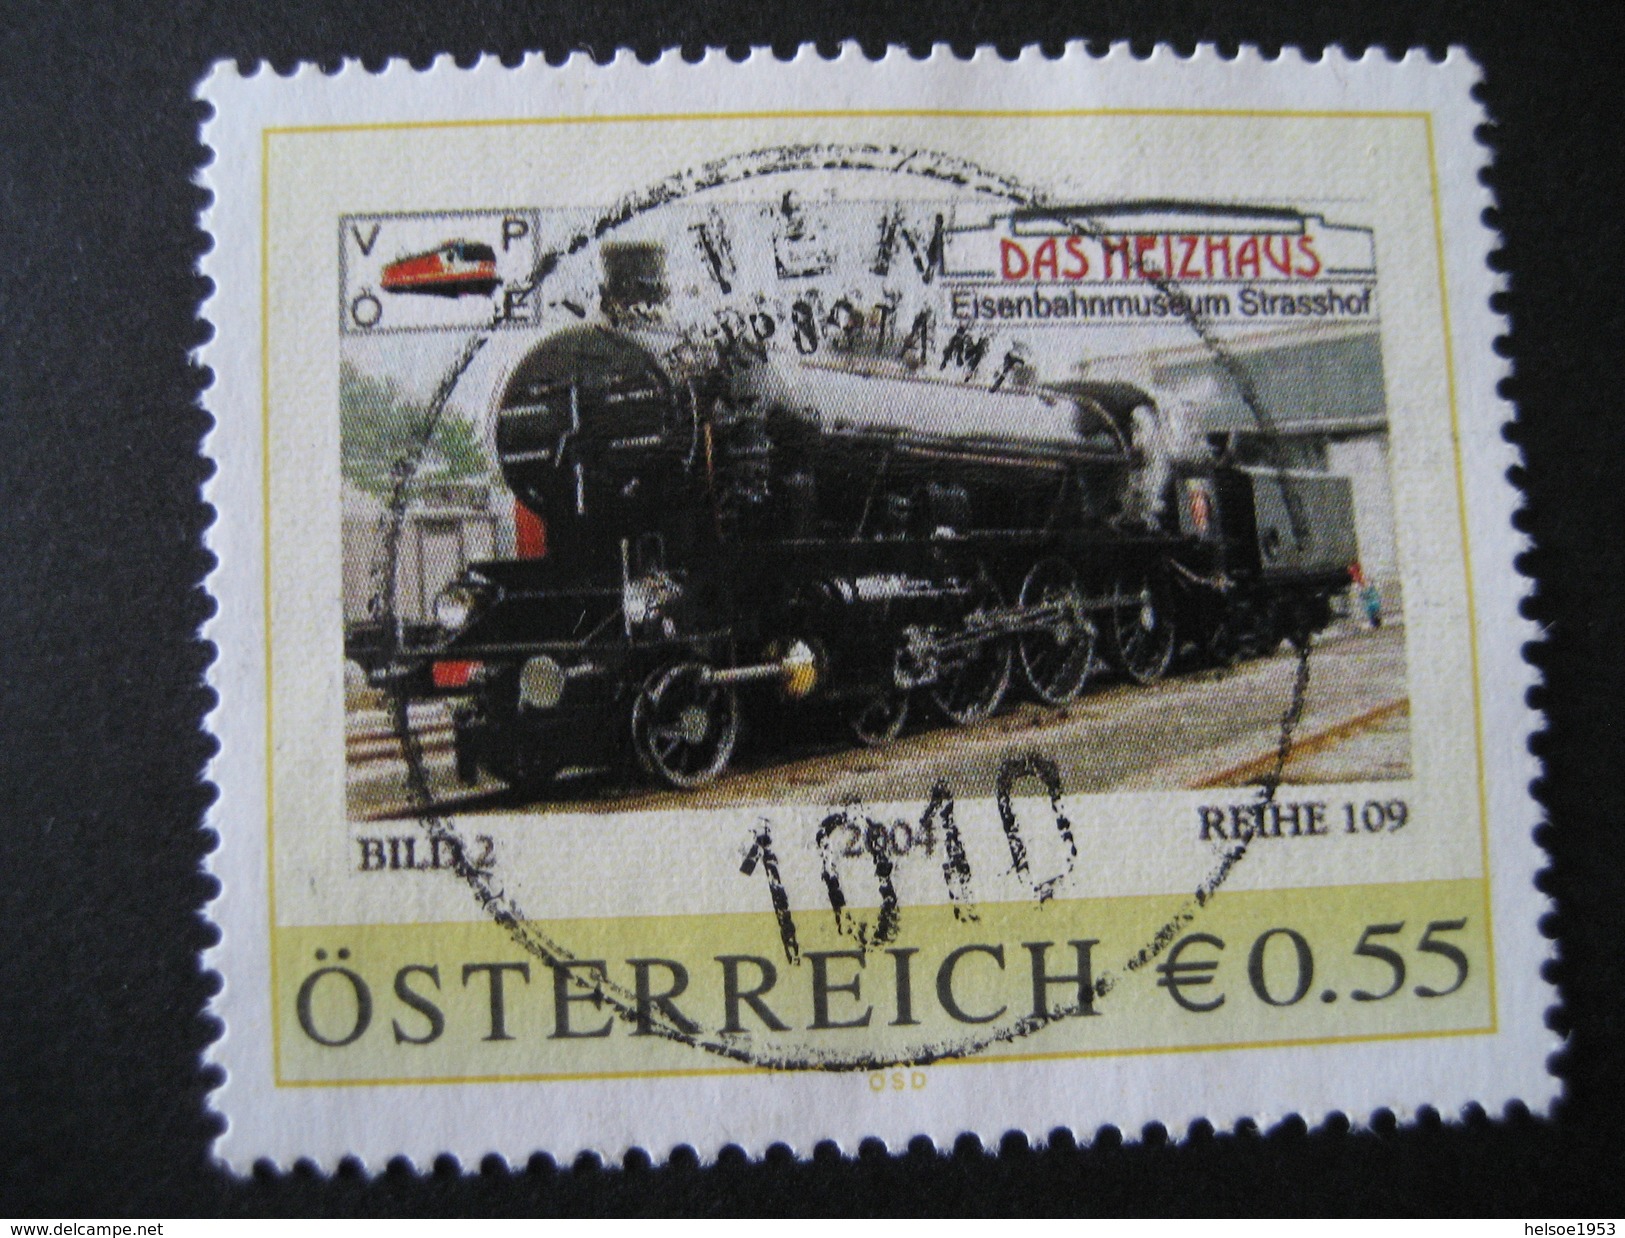 Österreich- Pers.BM 8001040- Strasshof Eisenbahnmuseum Bild 2, Reihe 109 Mit Vollstempel Wien - Personalisierte Briefmarken